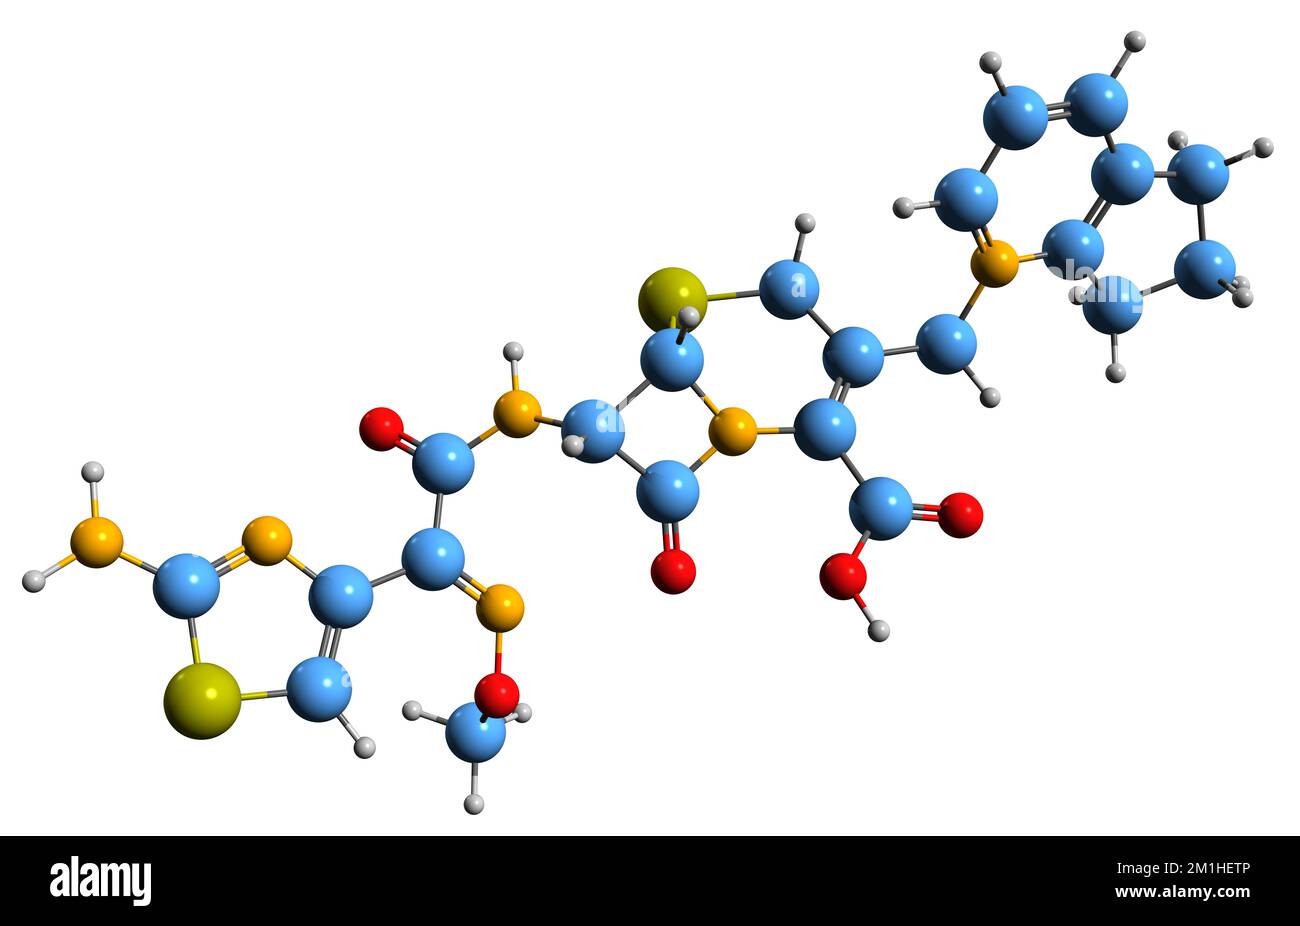 3D-Bild der Cefpirome-Skelettformel - molekularchemische Struktur eines auf weißem Hintergrund isolierten Cephalosporin-Antibiotikums Stockfoto